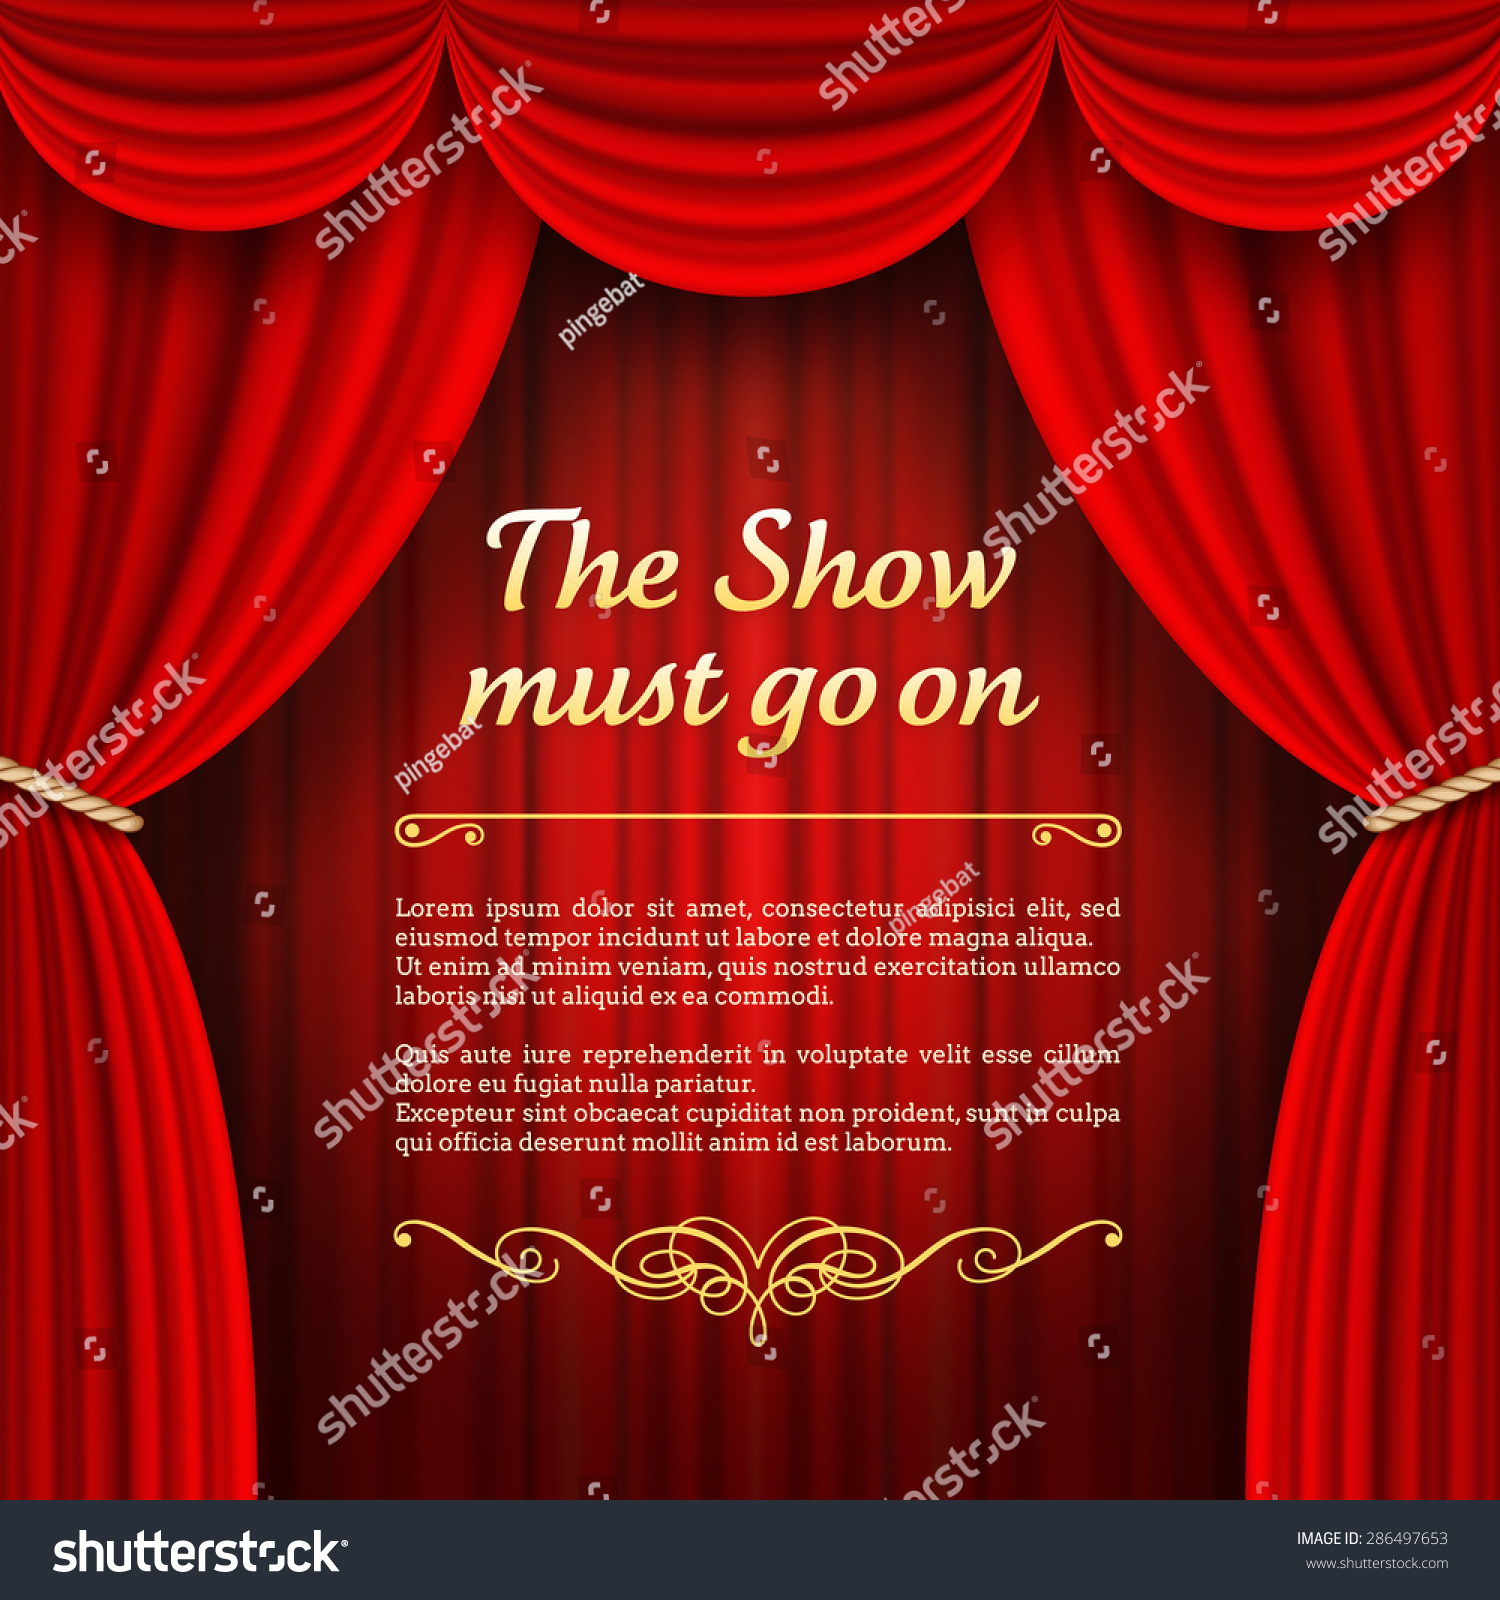 劇場の舞台に赤いフルステージのカーテンが描かれたベクターイラスト のベクター画像素材 ロイヤリティフリー